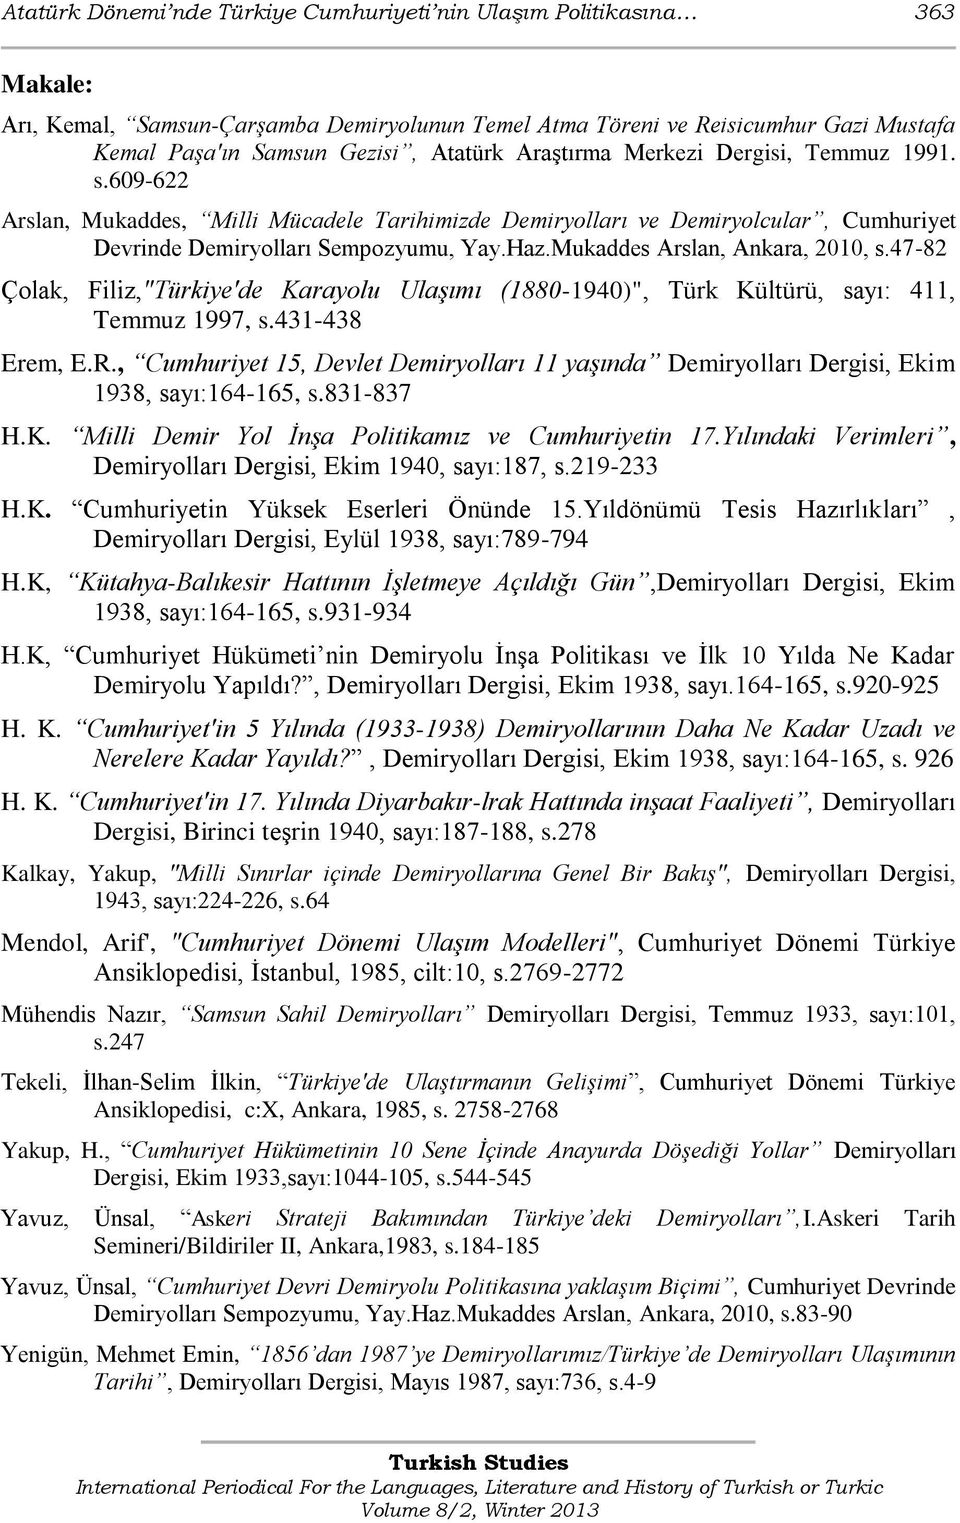 Mukaddes Arslan, Ankara, 2010, s.47-82 Çolak, Filiz,"Türkiye'de Karayolu Ulaşımı (1880-1940)", Türk Kültürü, sayı: 411, Temmuz 1997, s.431-438 Erem, E.R.